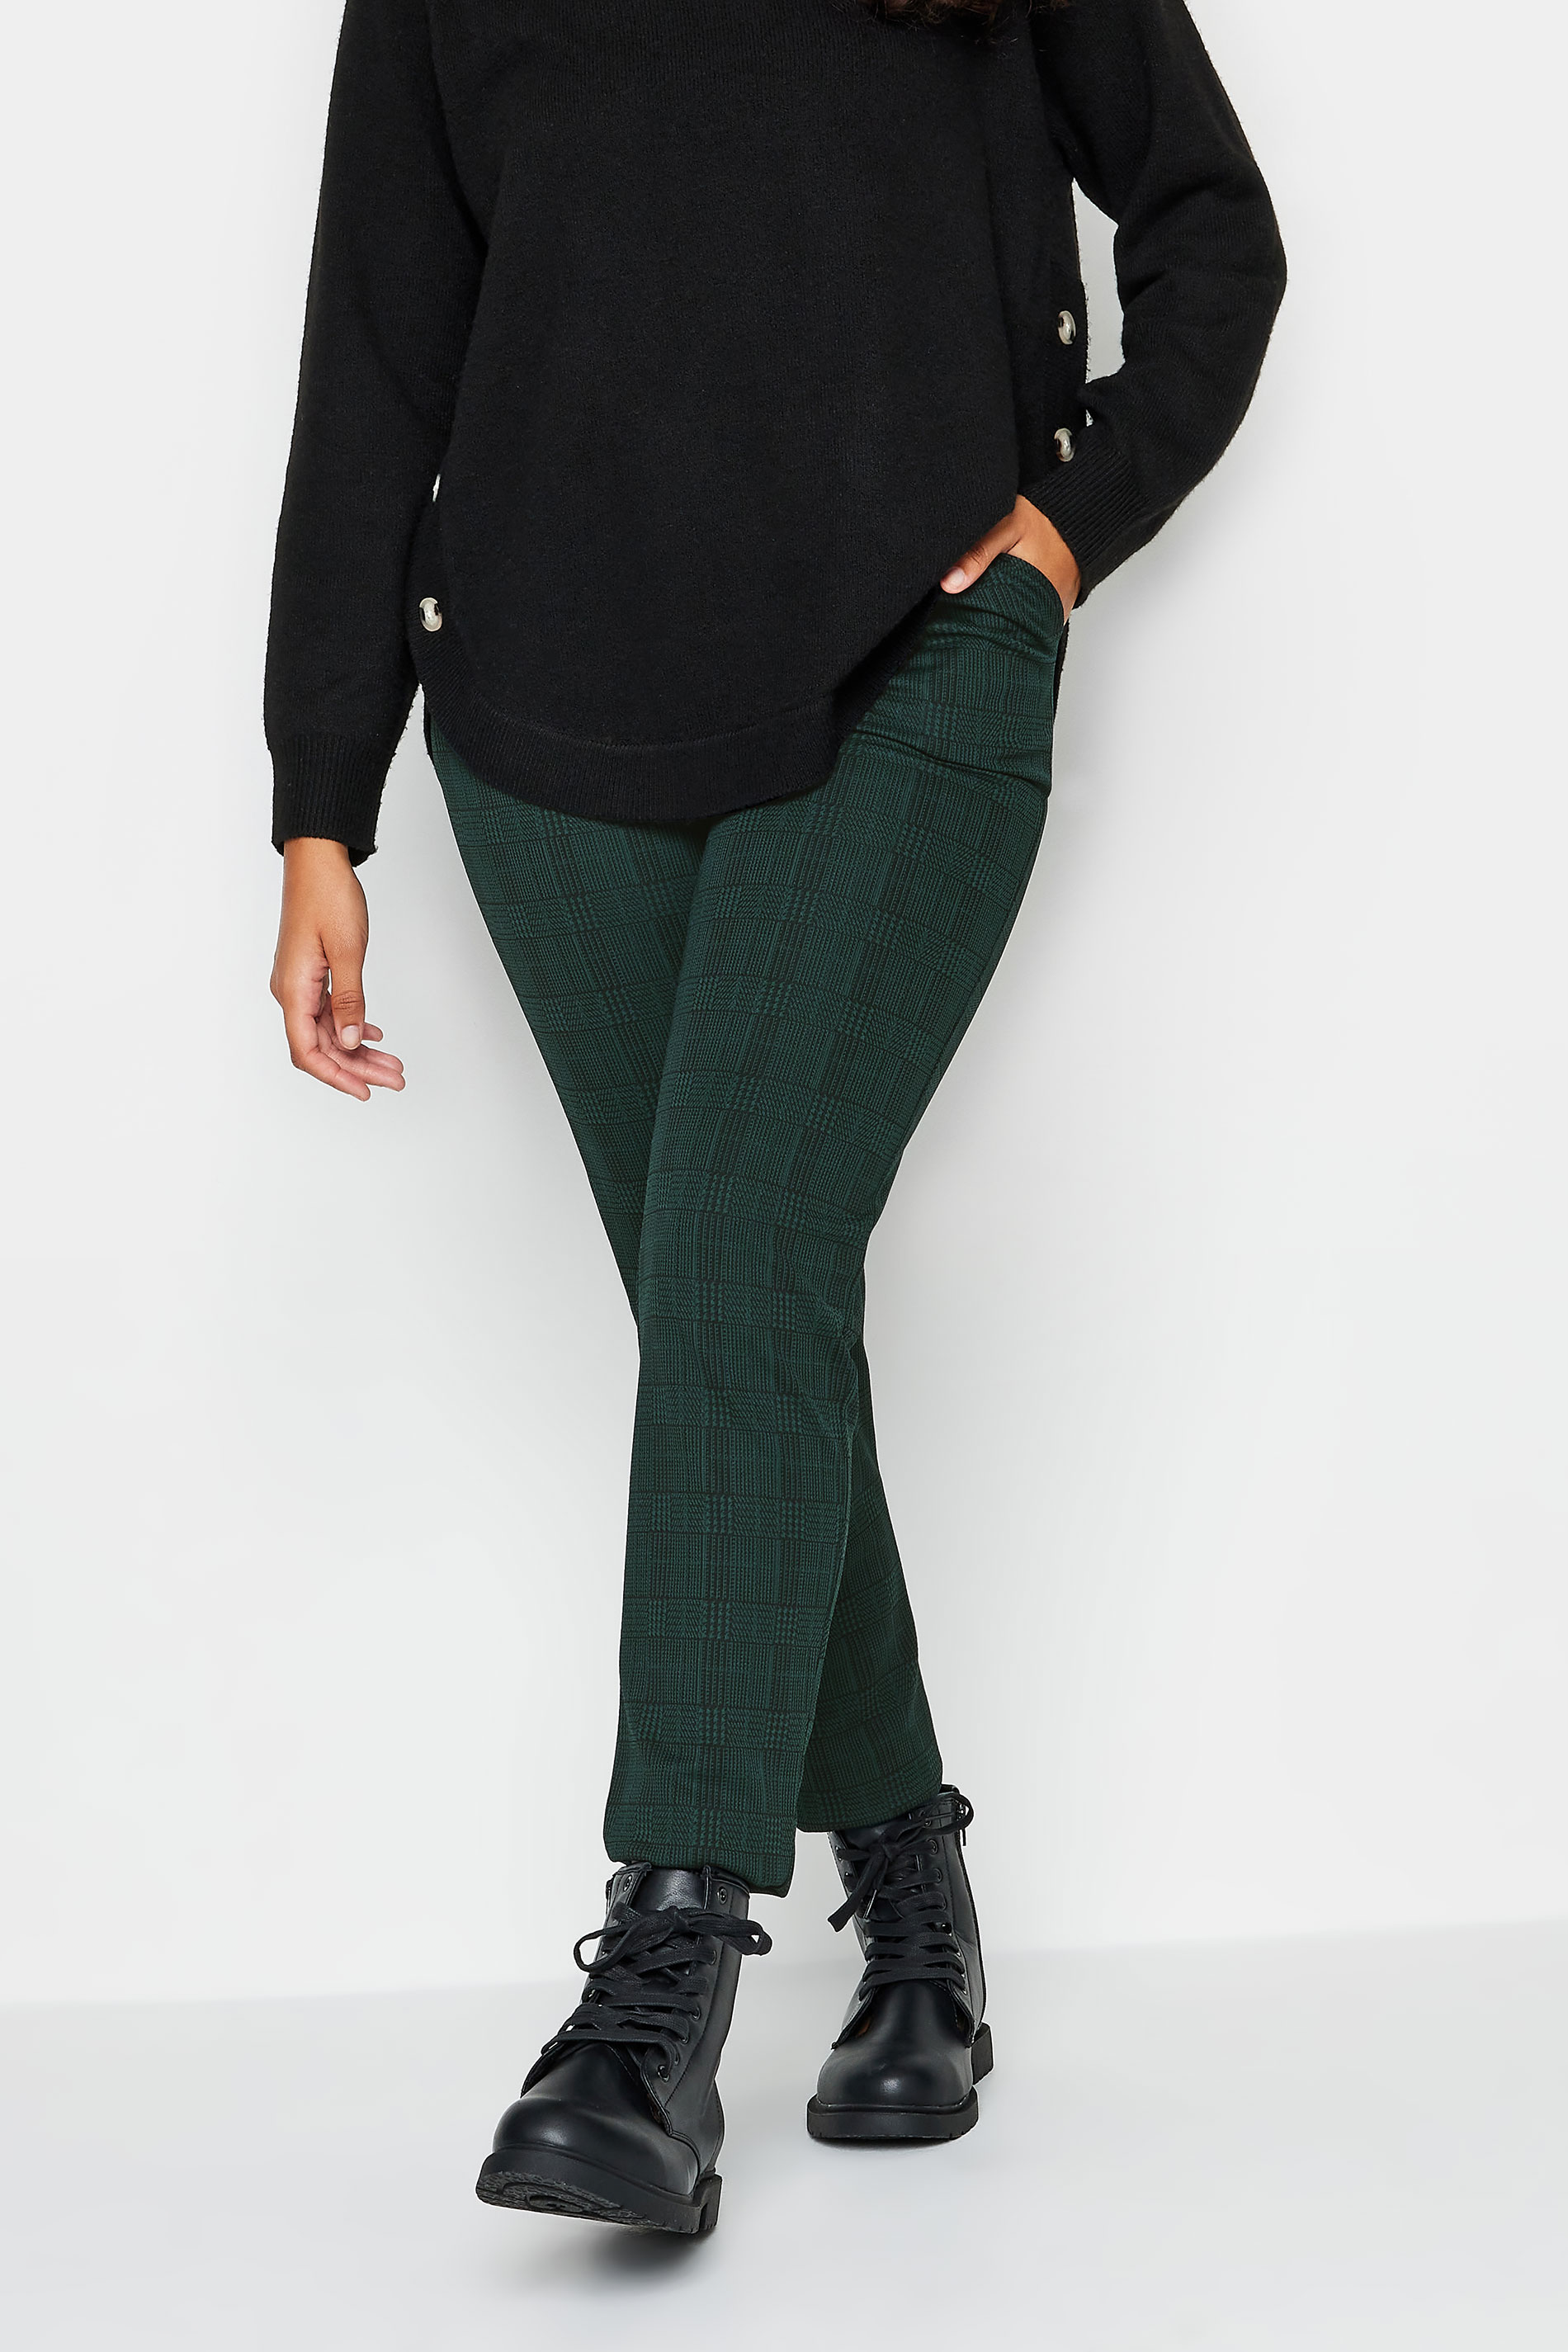 M&Co Petite Teal Green Check Print Slim Leg Trousers | M&Co 1